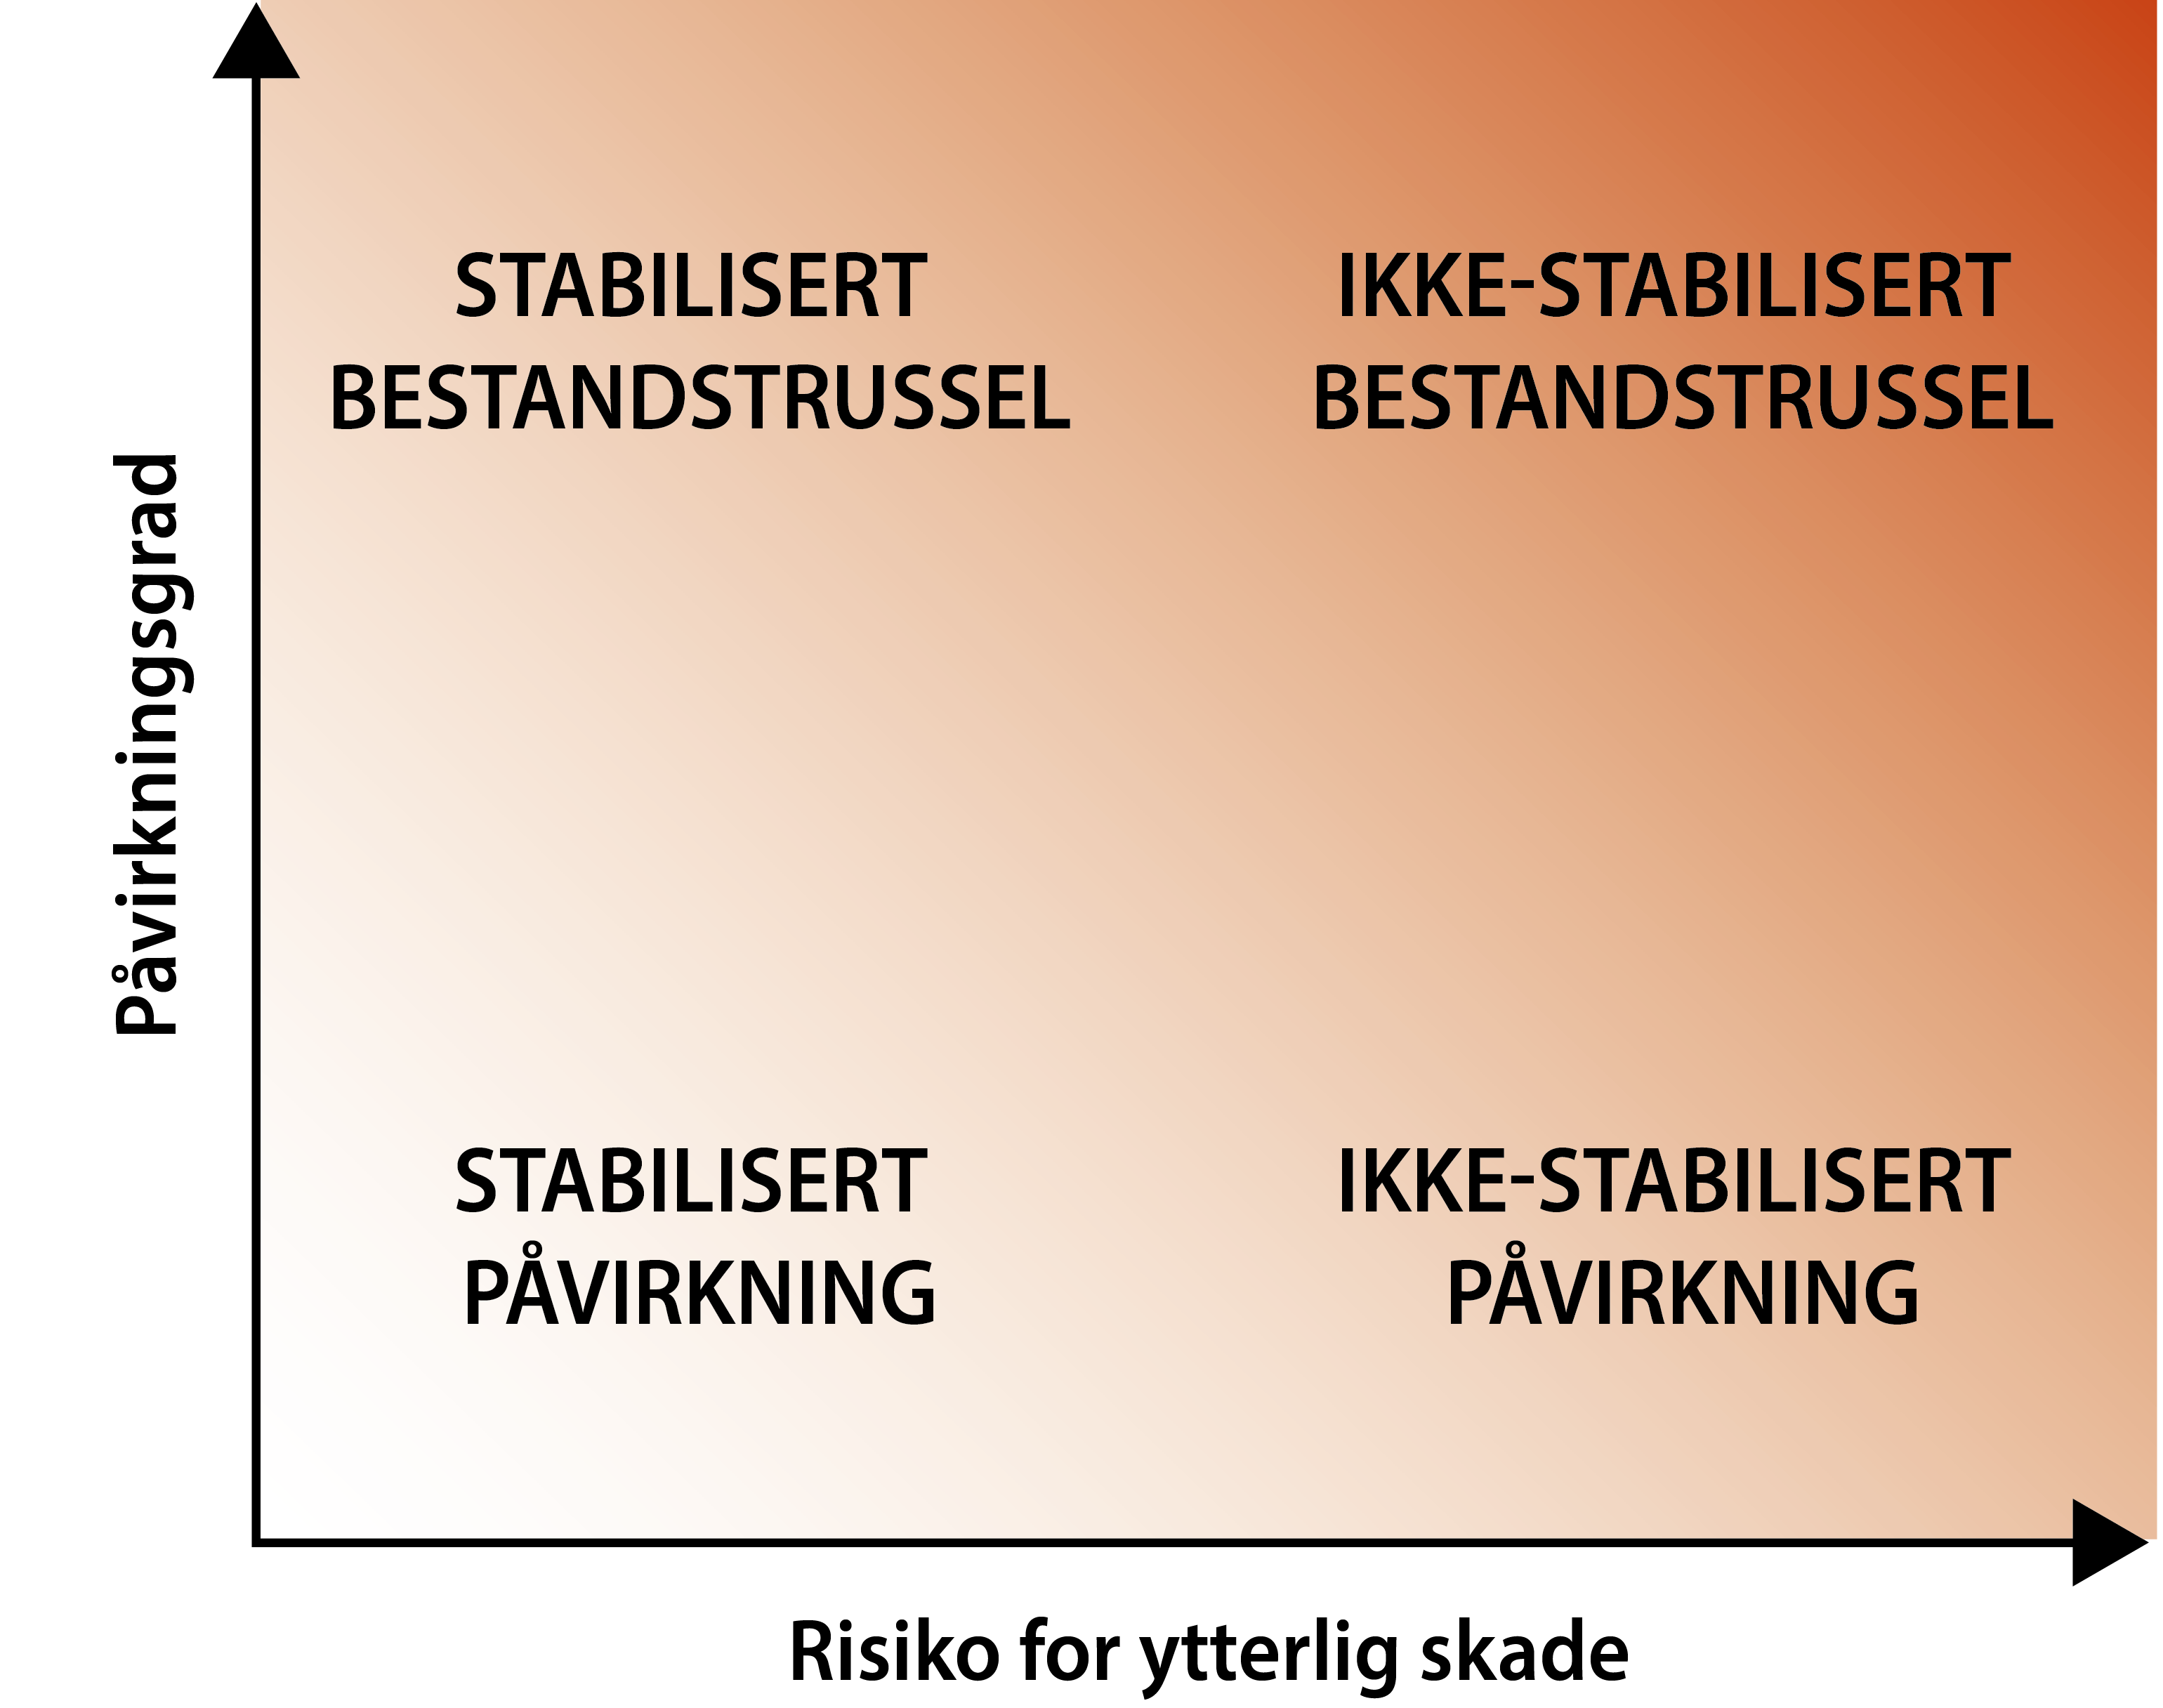 Dette er det todimensjonale klassifiseringssystemet for å vurdere påvirkningsfaktorer og bestandstrusler for norsk villaks. Jo mørkere farge jo mer alvorlig.